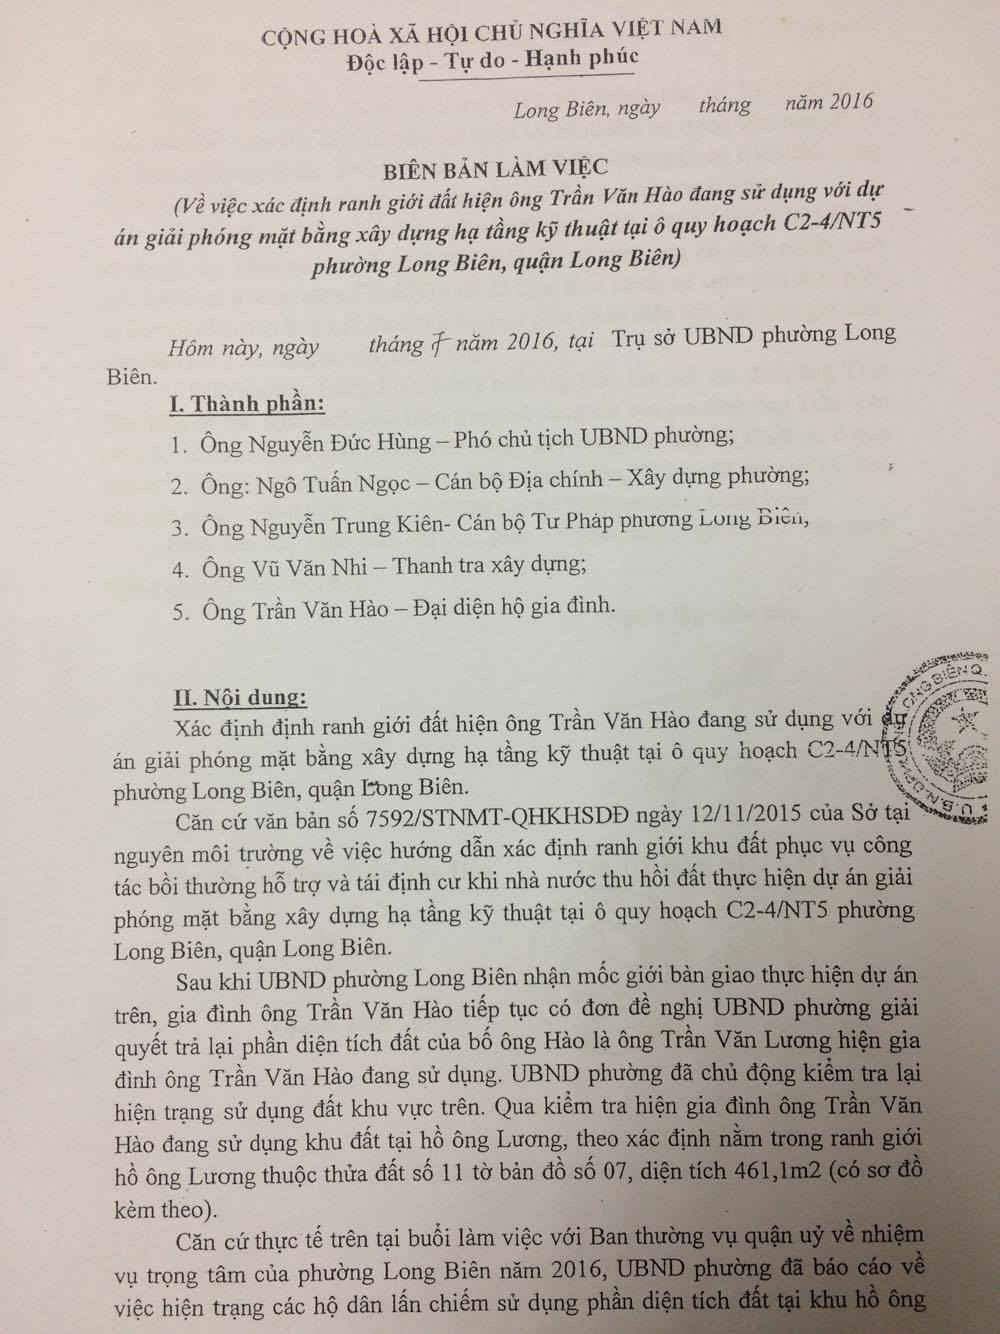 Biên bản làm việc giữa UBND phường Long Biên và gia đình nhà ông Hào vào tháng 7/2016. 